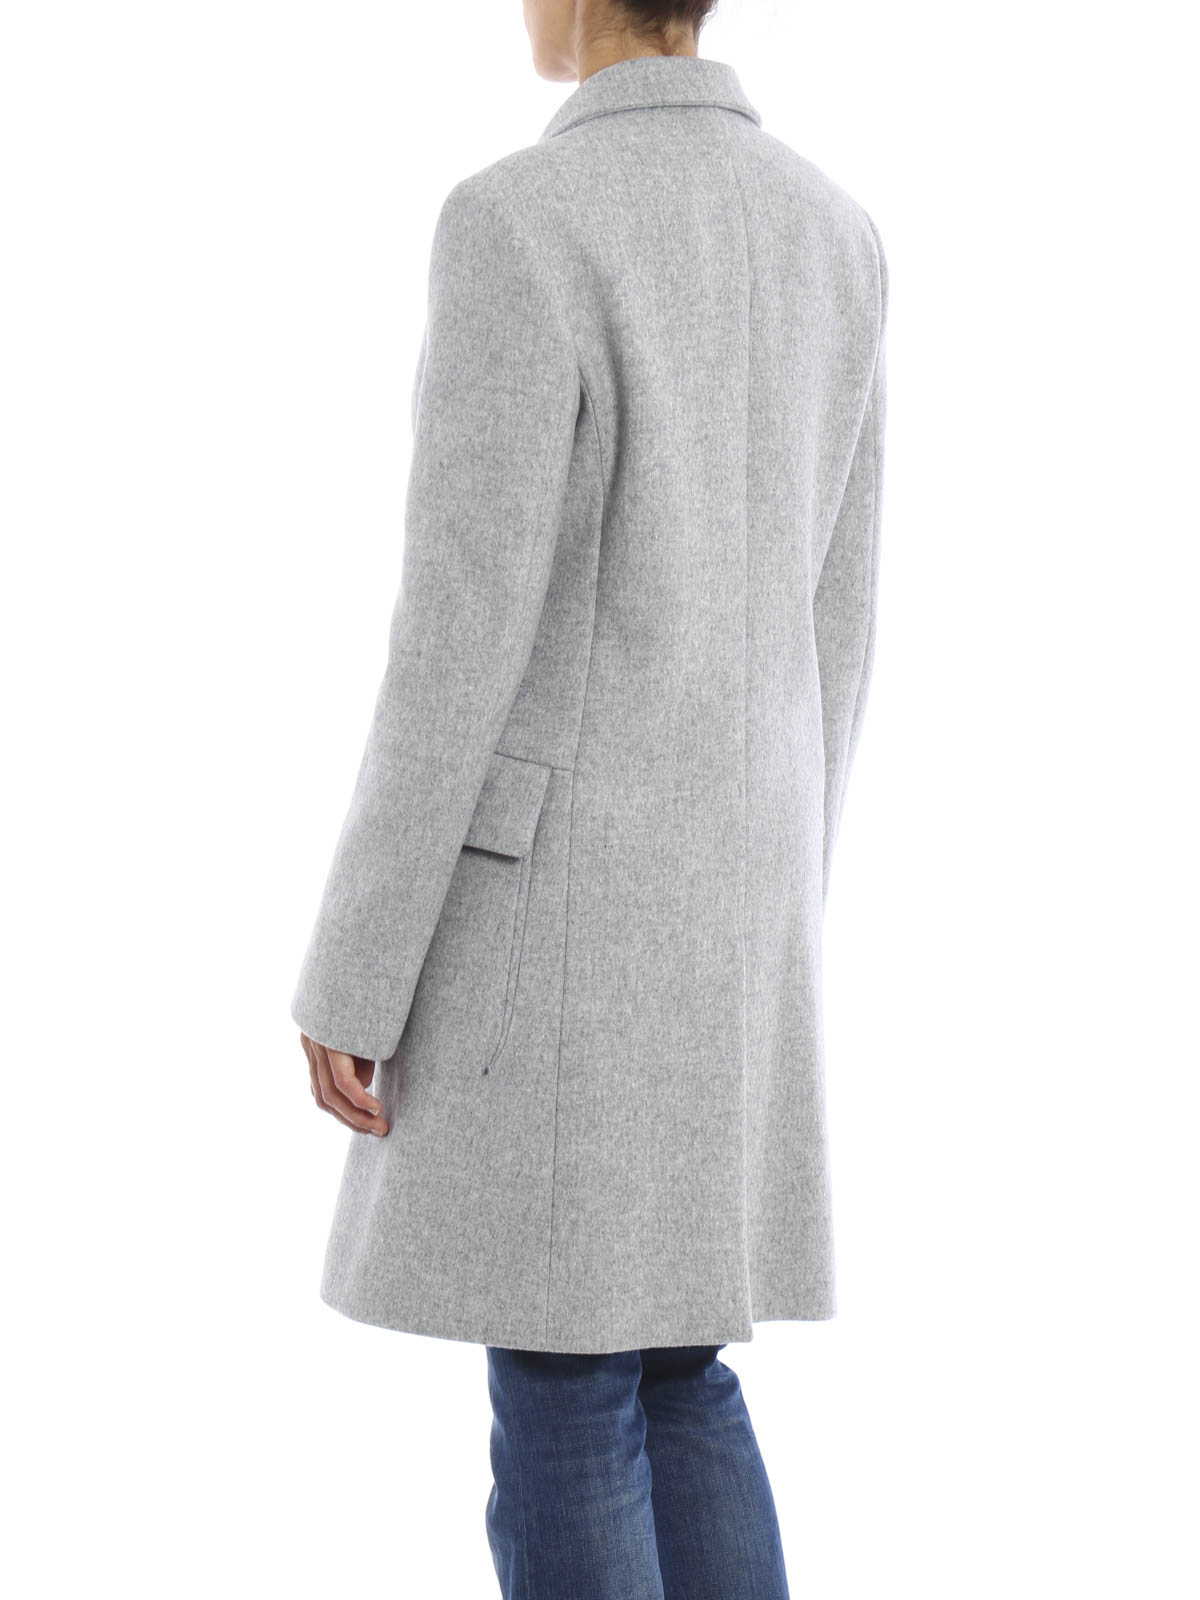 manteau court gris clair femme